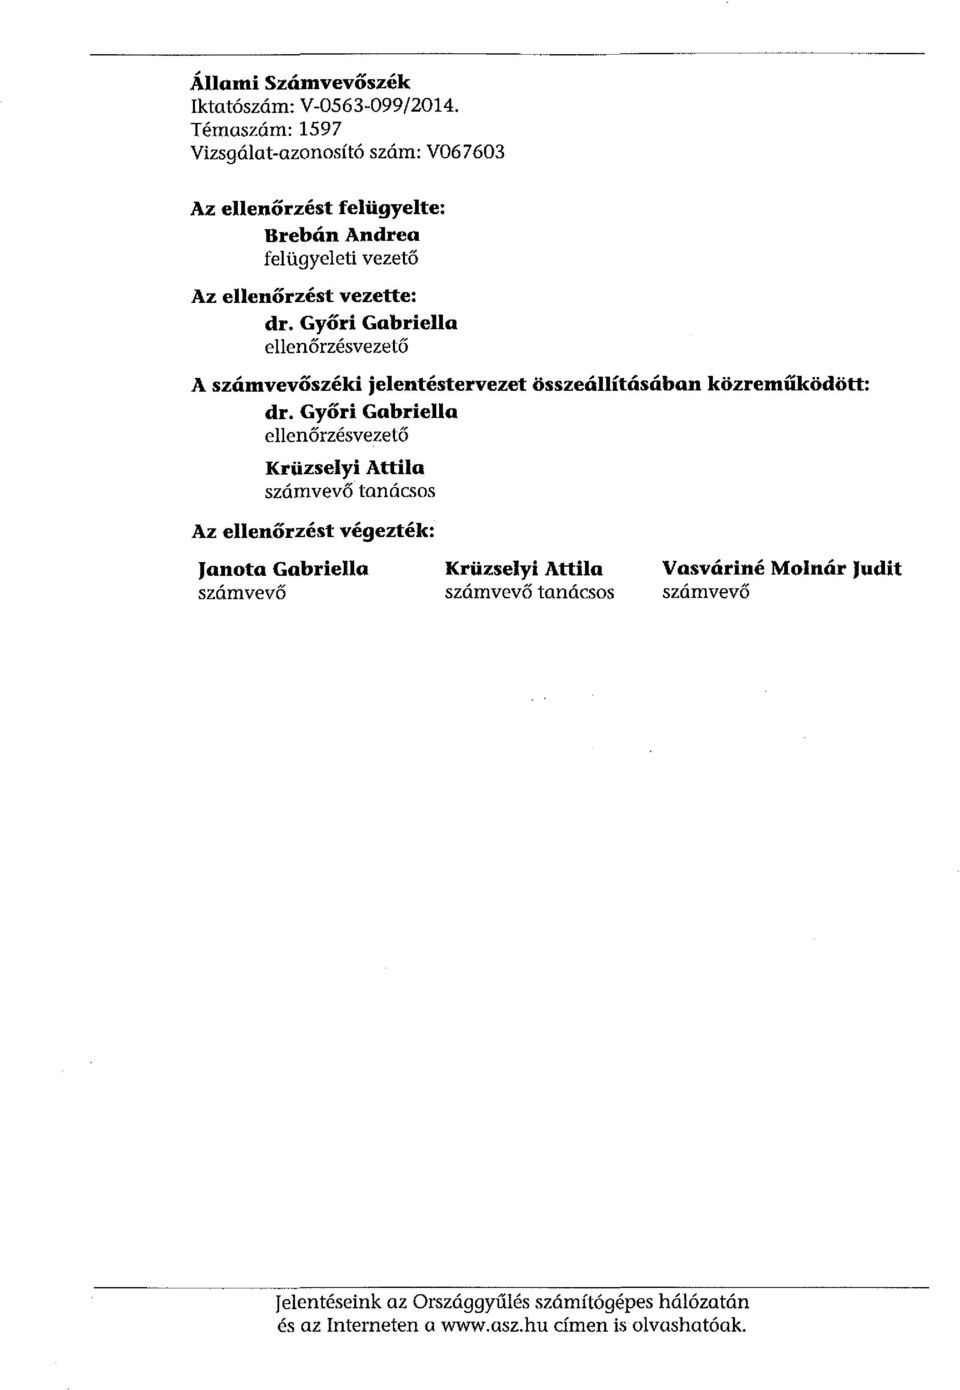 Győri Gabriella ellenőrzésvezető A számvevőszéki jelentéstervezet összeállításában közreműködött: dr.